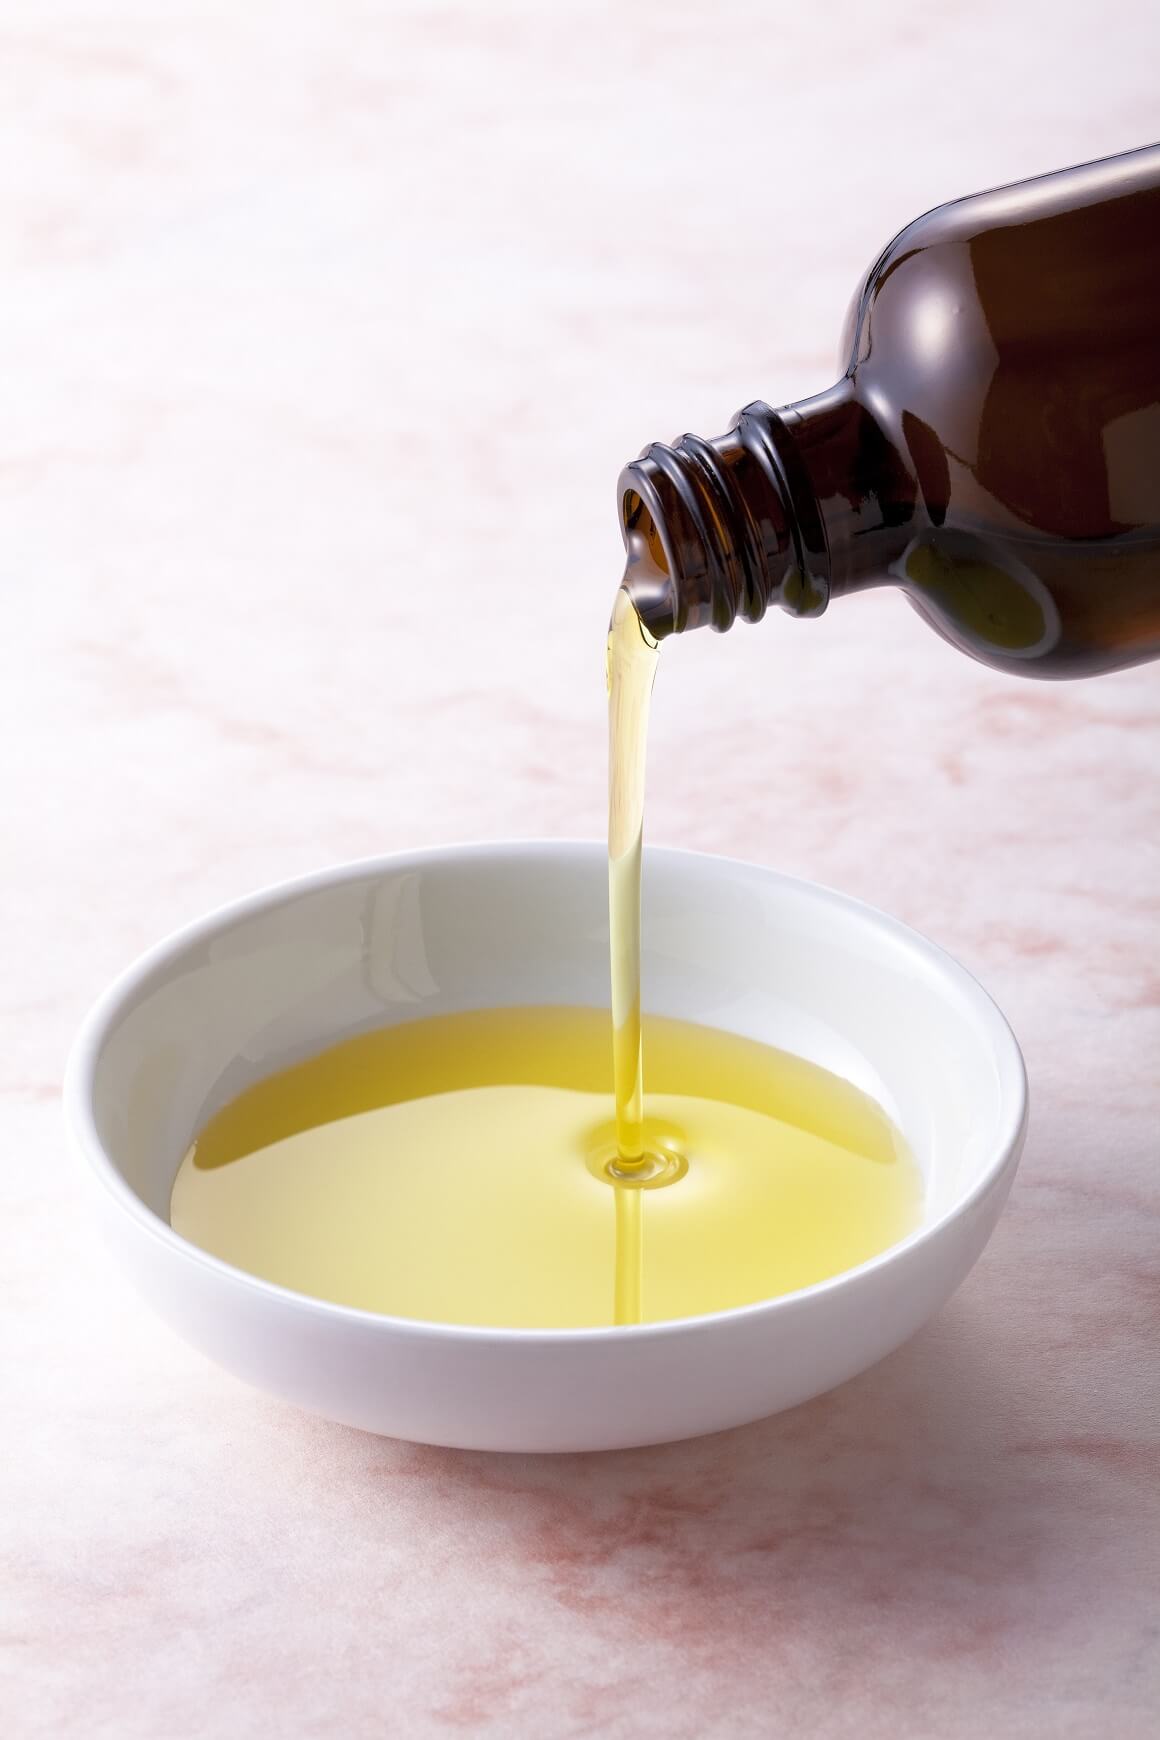 Maslinovo ulje kao lijek za sinuse